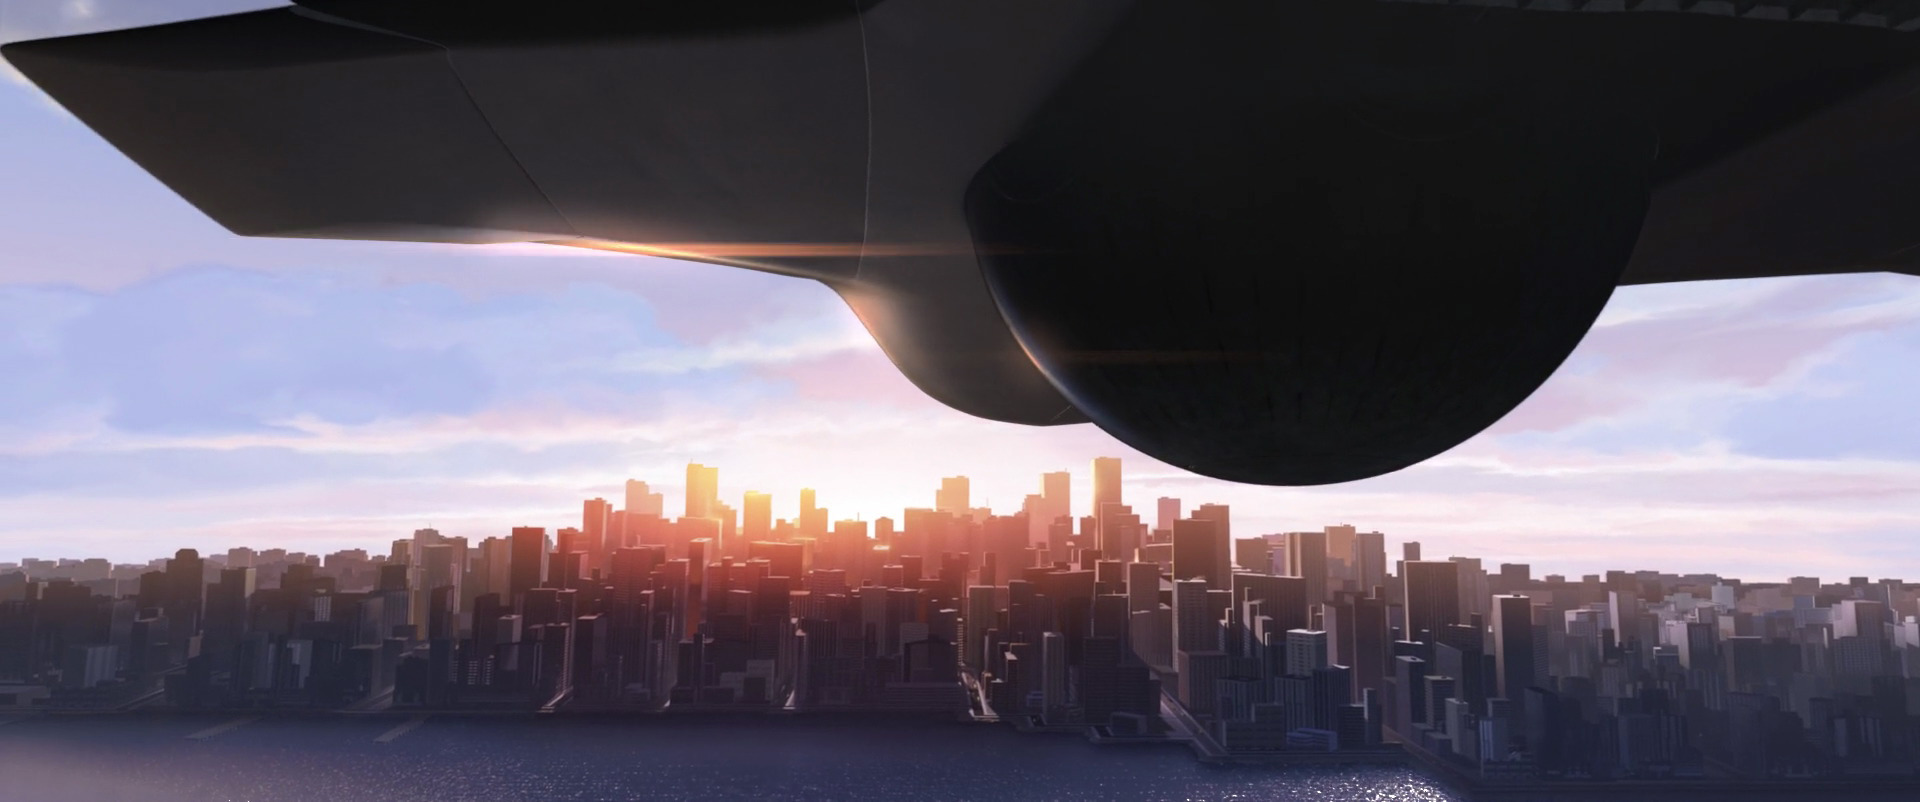 یک سفینه فضایی درحال رسیدن به شهر متروویل در انیمیشن The Incredibles